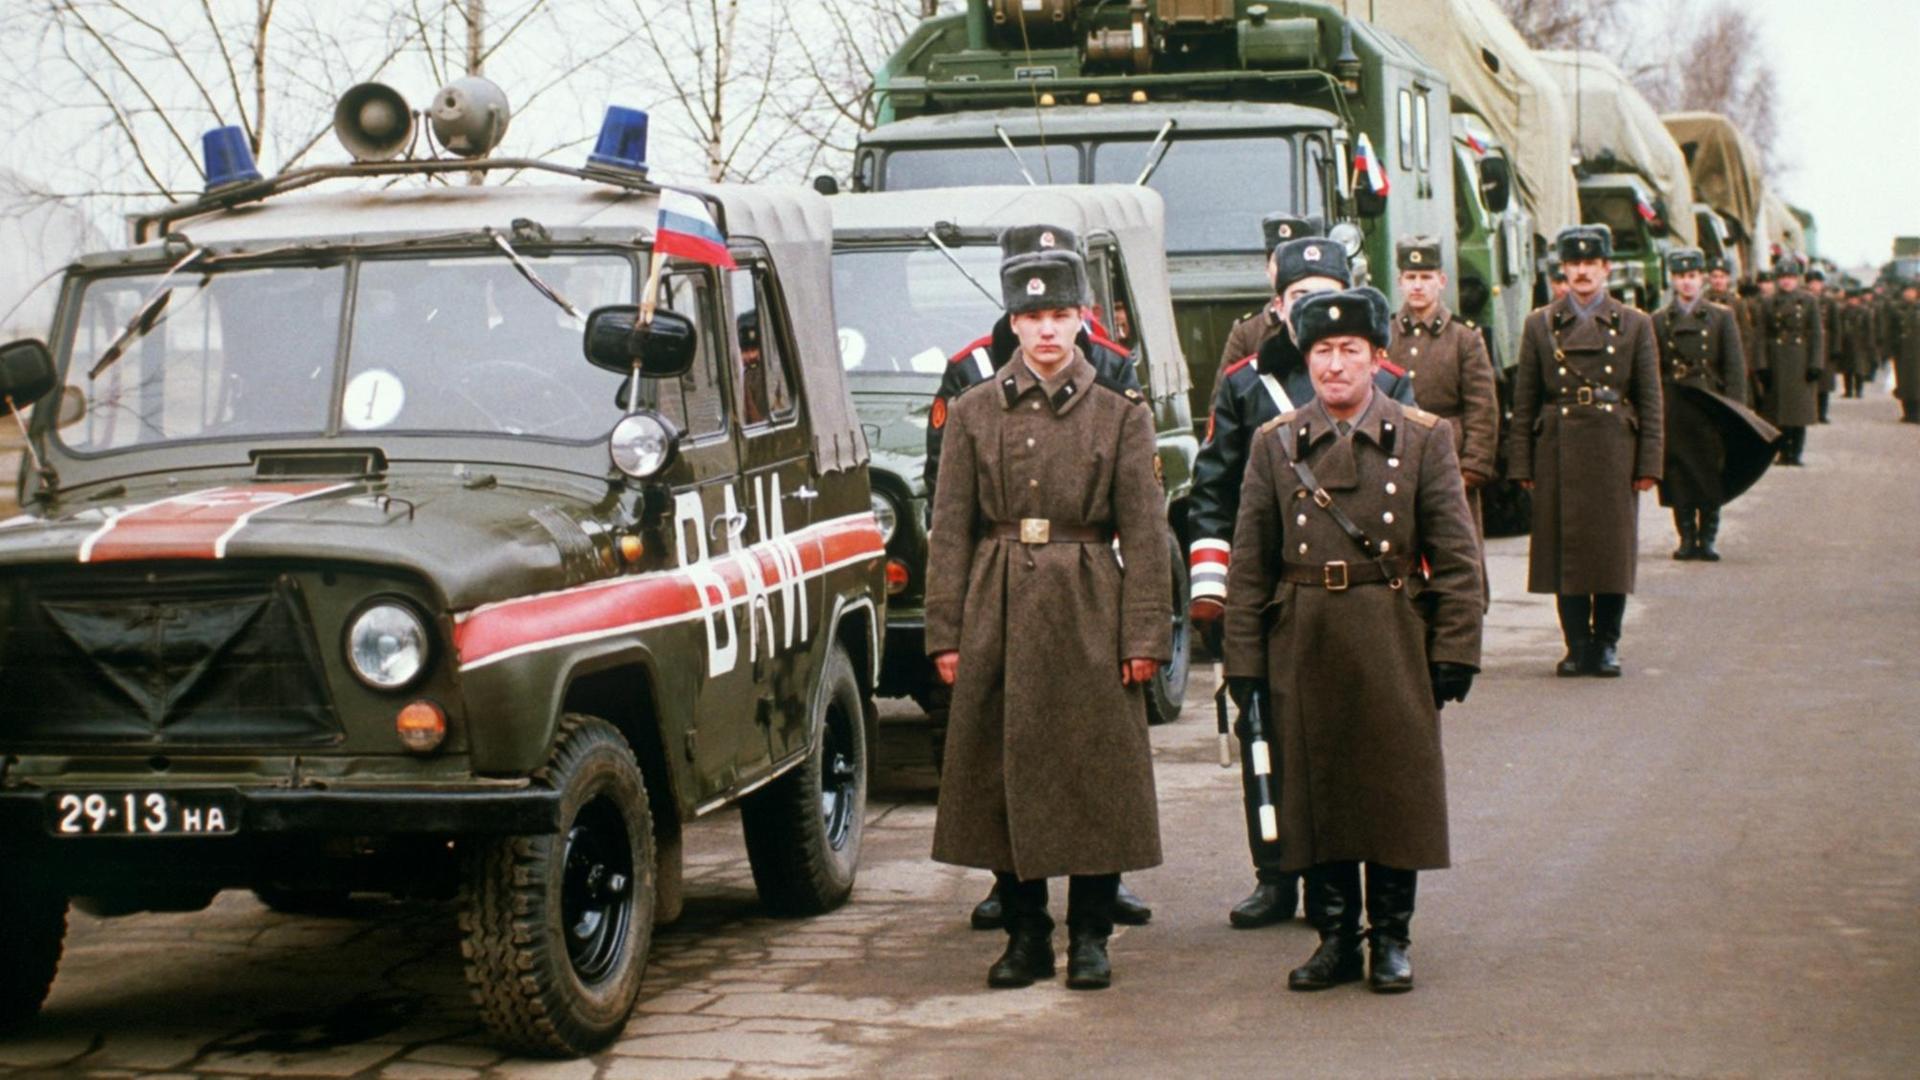 Sowjetische Truppen ziehen aus Litauen ab, aufgenommen am 3. März 1992. Litauen hatte am 11. März 1991 als erste sowjetische Unionsrepublik die Unabhängigkeit verkündet, diese wurde am 6. September 1991 auch vom Staatsrat der UdSSR akzeptiert.